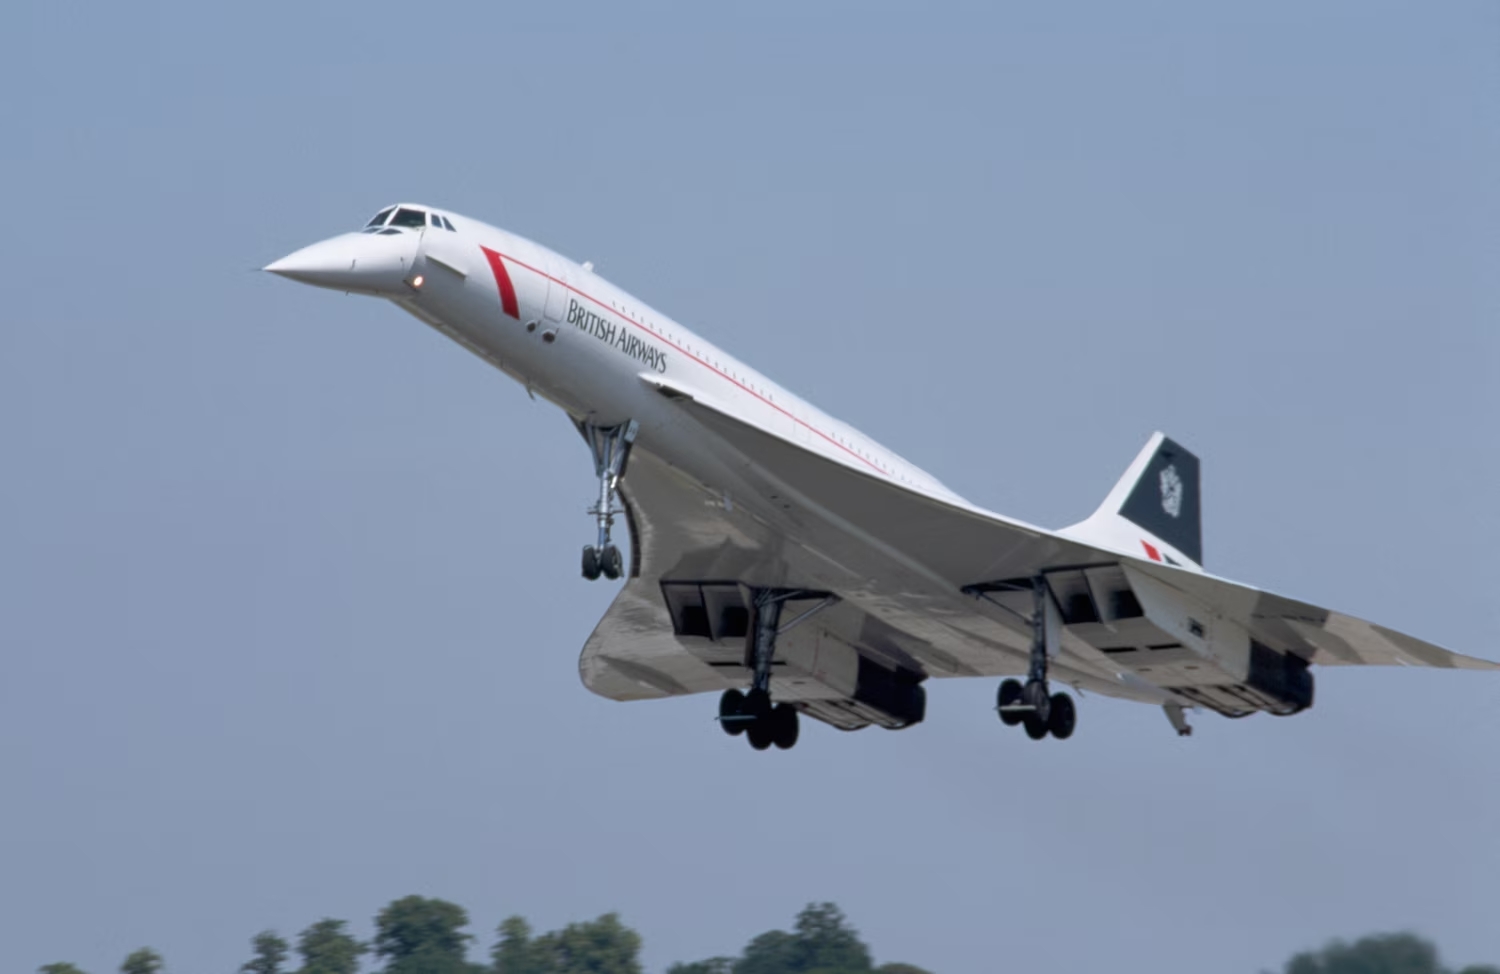 Il leggendario "Concorde", impiegato per 27 anni dalle compagnie British Airways e Air France. Insieme al sovietico Tupolev Tu-144 è l'unico aereo passeggeri supersonico mai entrato in servizio.